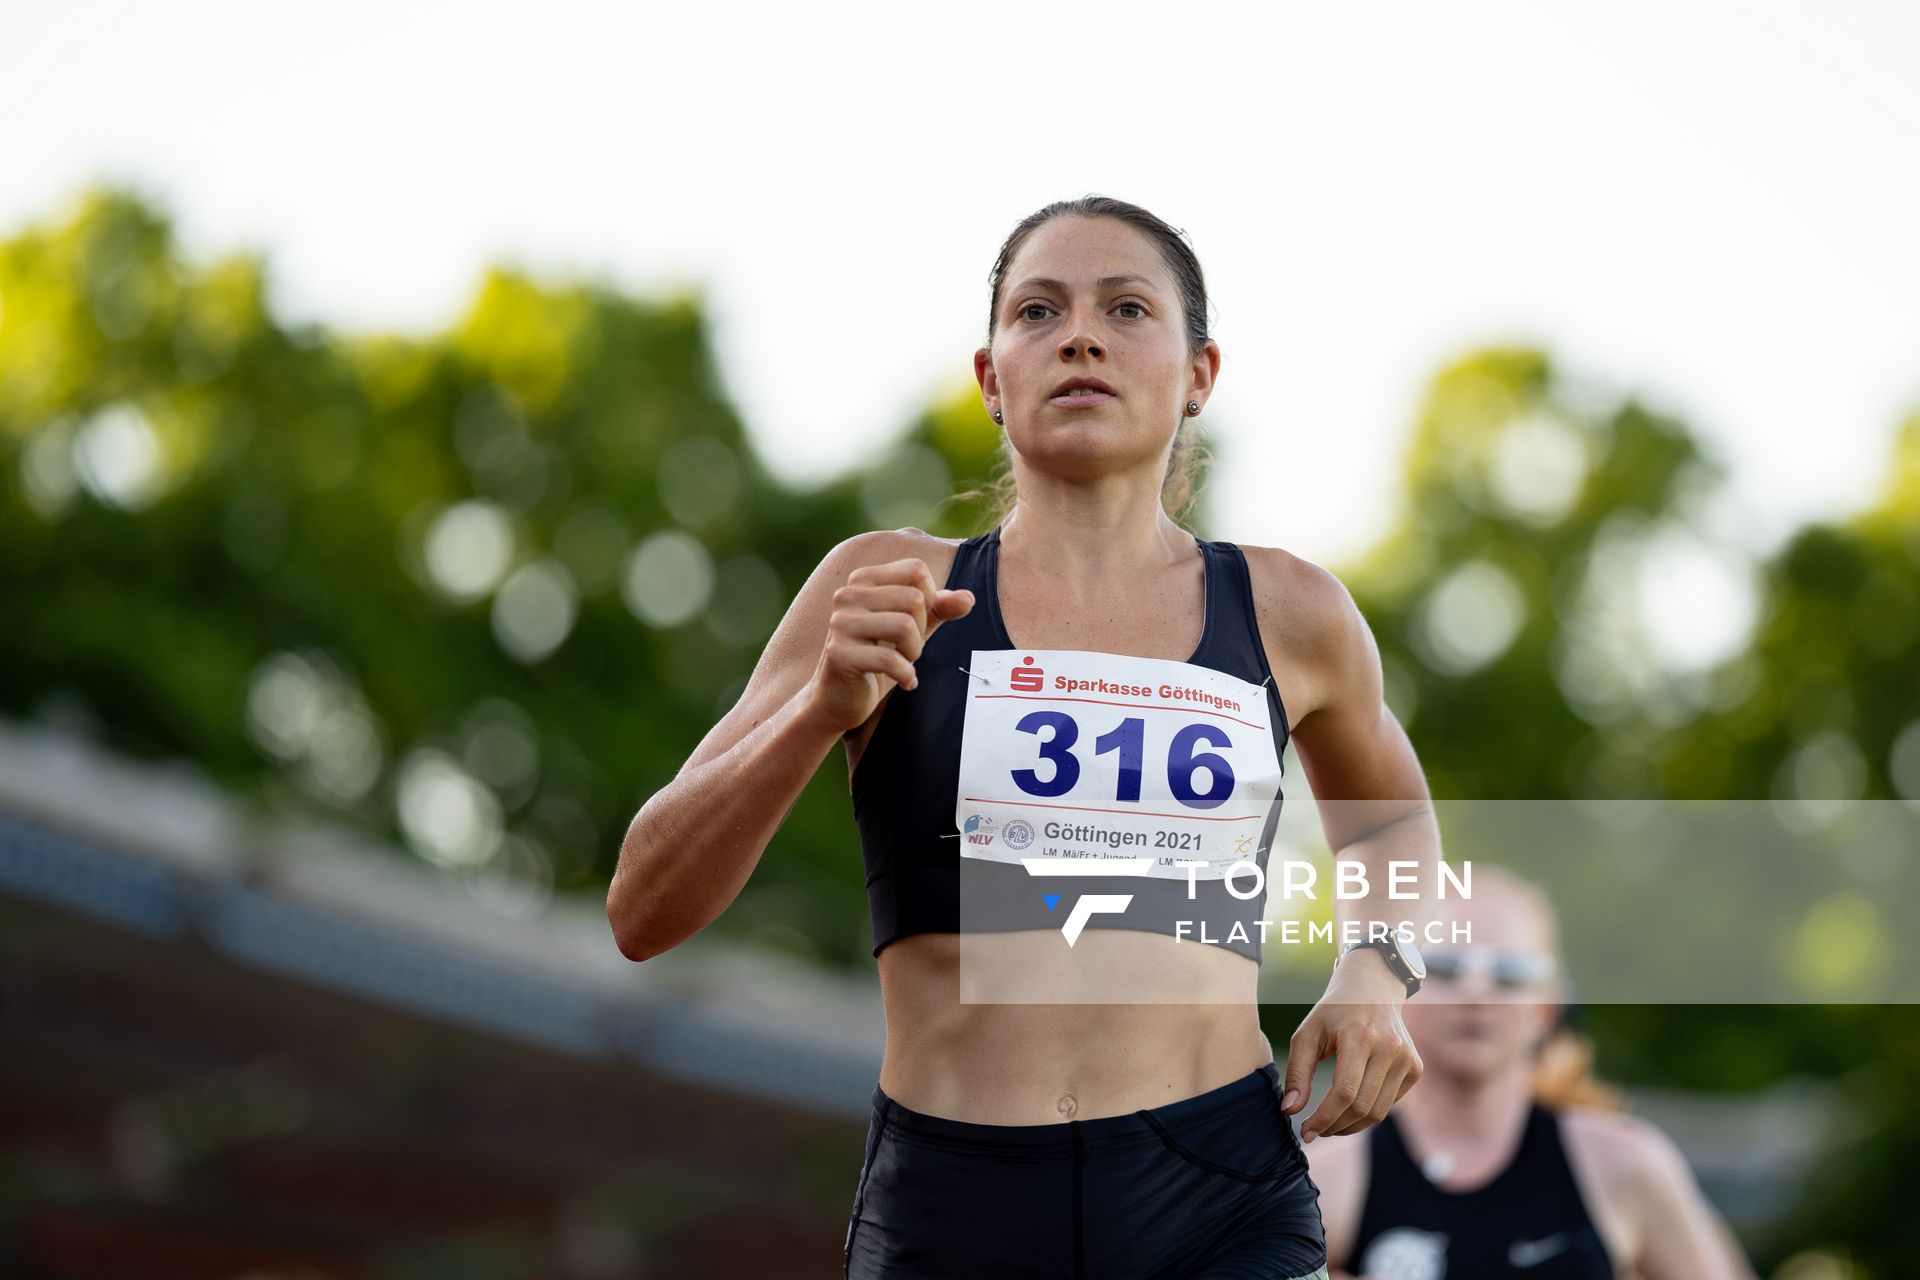 Naima Madlen Diesner (LG Goettingen) ueber 5000m am 19.06.2021 waehrend den NLV + BLV Landesmeisterschaften im Jahnstadion in Göttingen